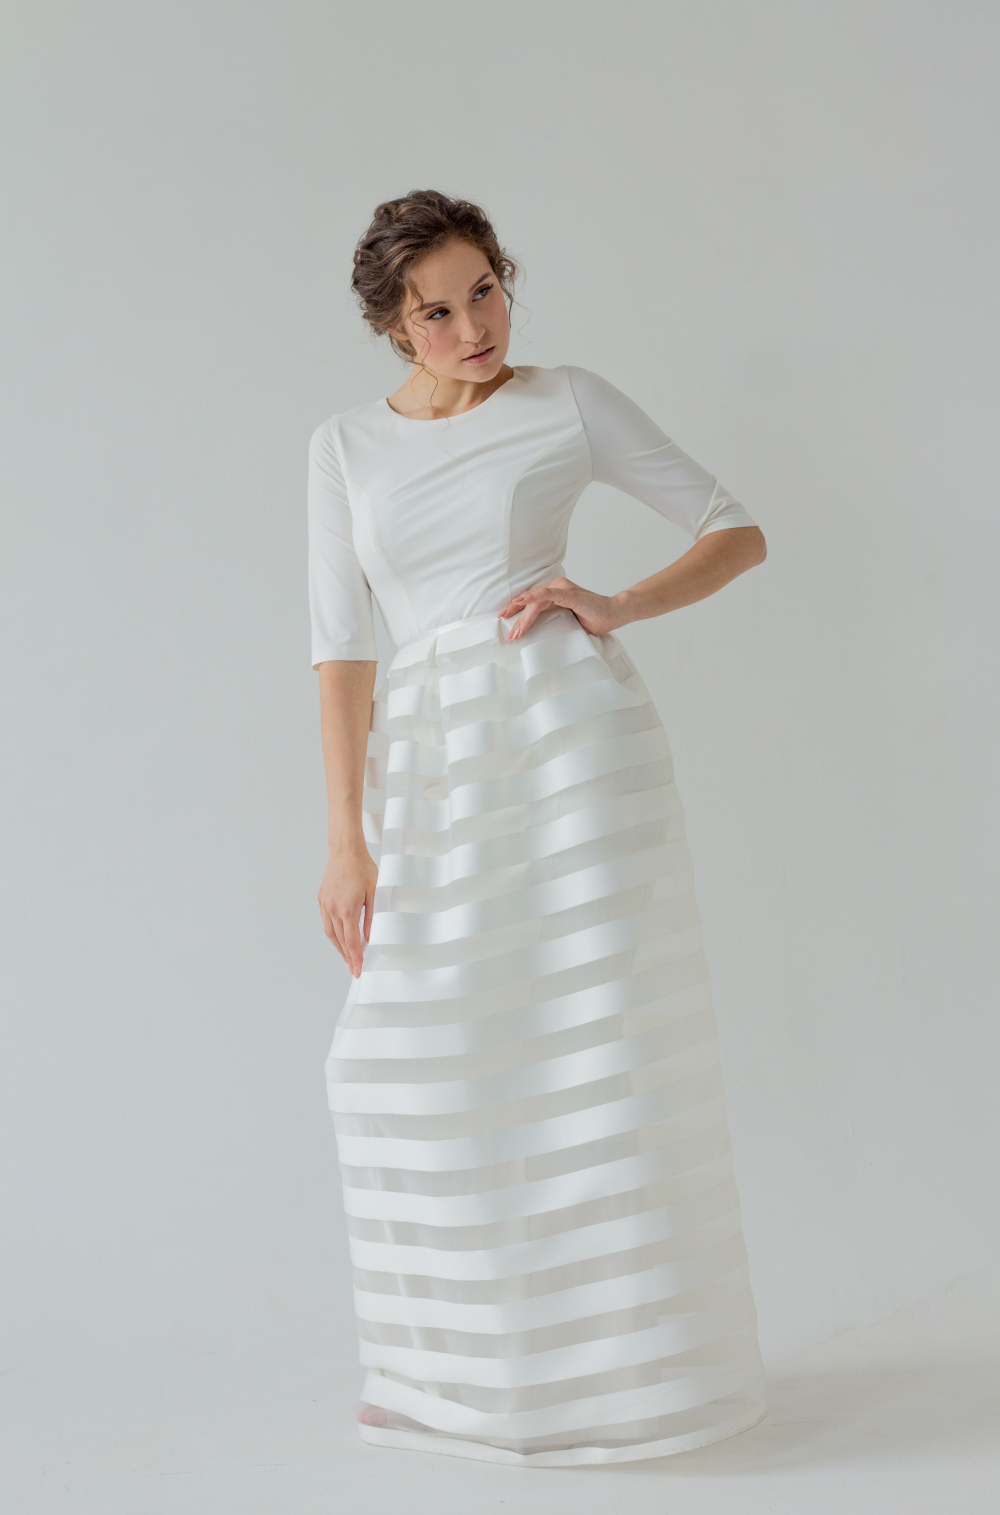 Свадебное платье - футляр со съемной, полосатой юбкой, с рукавом 3/4. Дизайнерский и стильный образ. Размер 42.